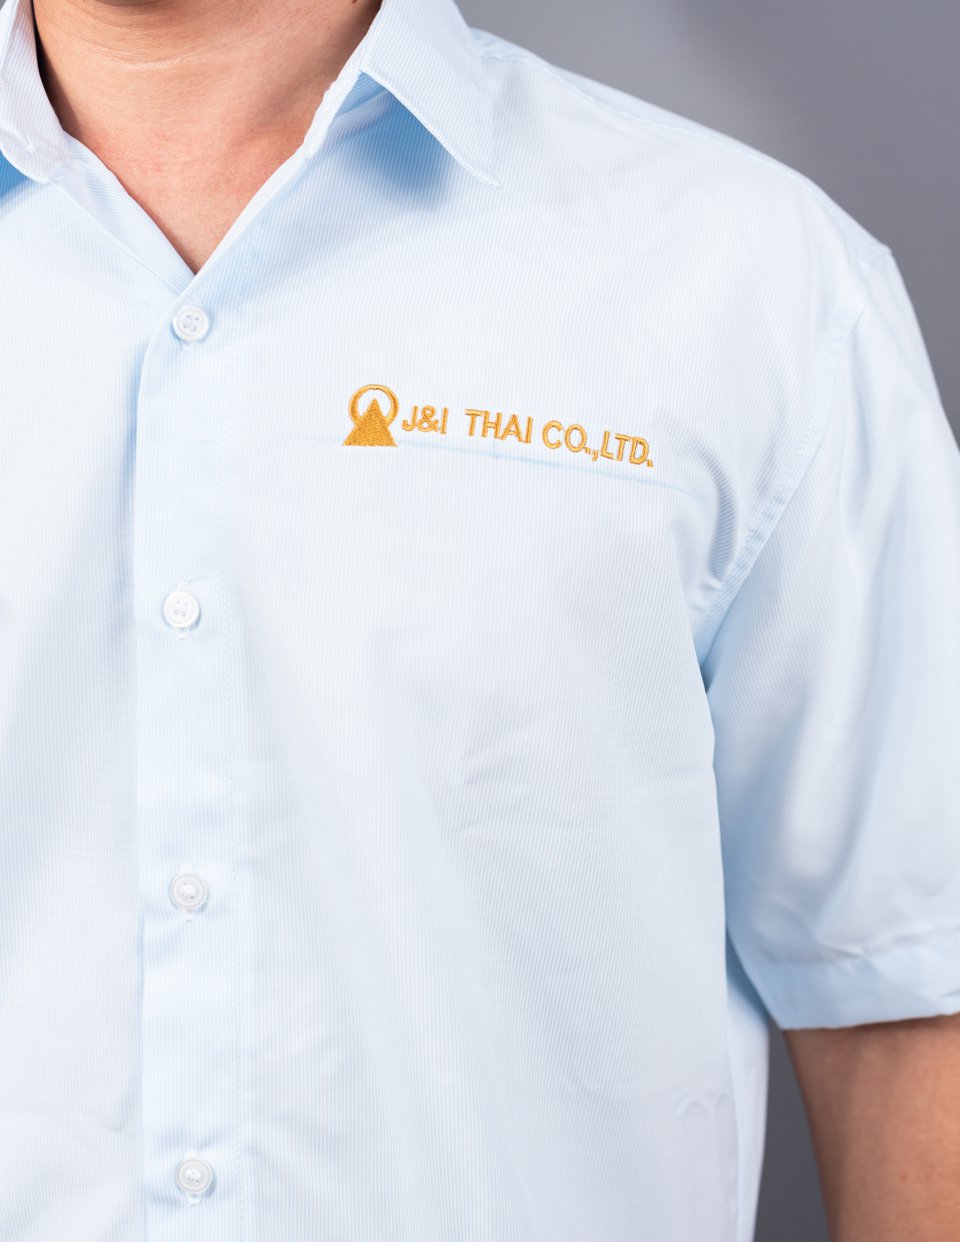 ตัวอย่างเสื้อเชิ้ตพนักงานแขนสั้น J&I THAI CO.,LTD / นลินสิริ 2015 จำกัด รับผลิตเสื้อเชิ้ตพนักงานพร้อมปักโลโก้รูปที่ 